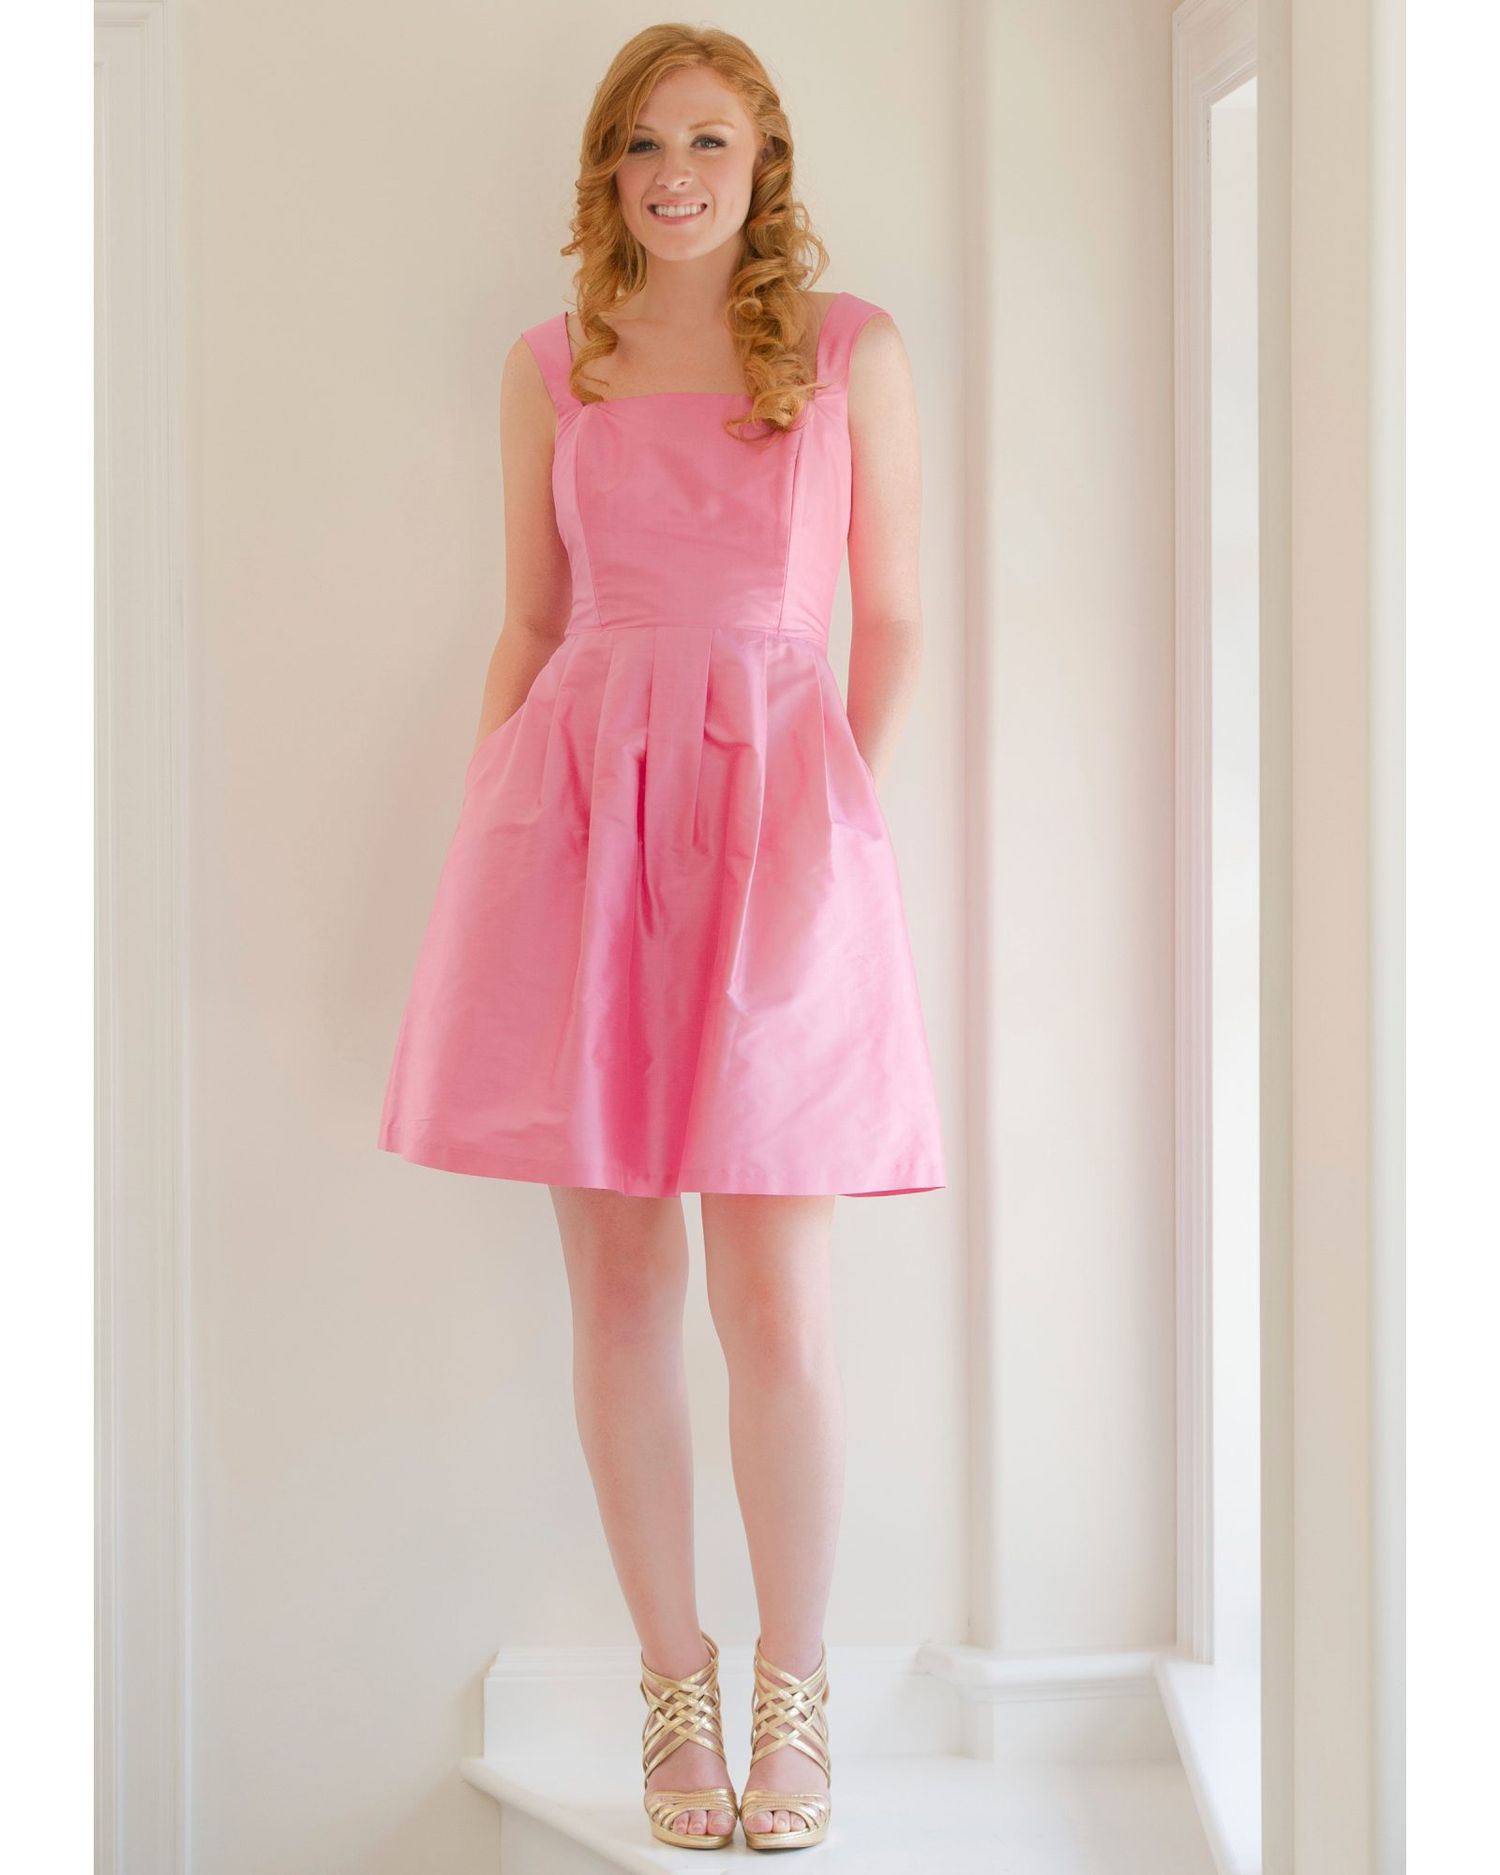 Short Pink Bridesmaid Dress